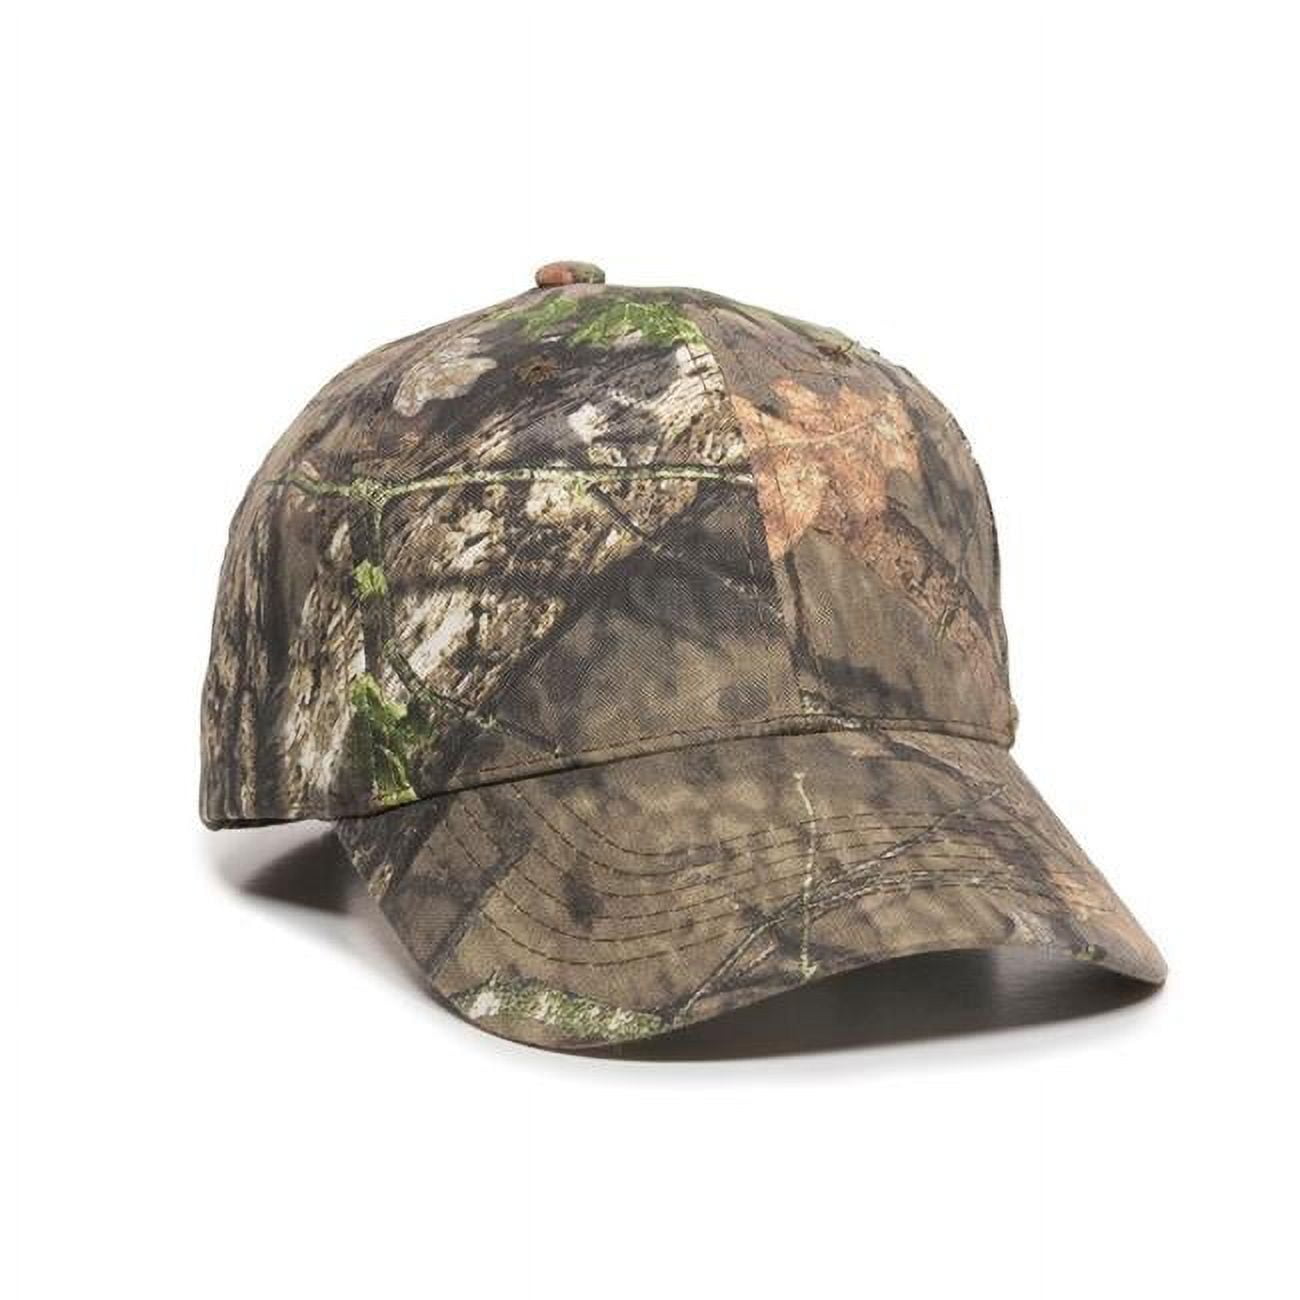 Solid Back Camo Cap, Mossy Oak Breakup - One Size - Walmart.com